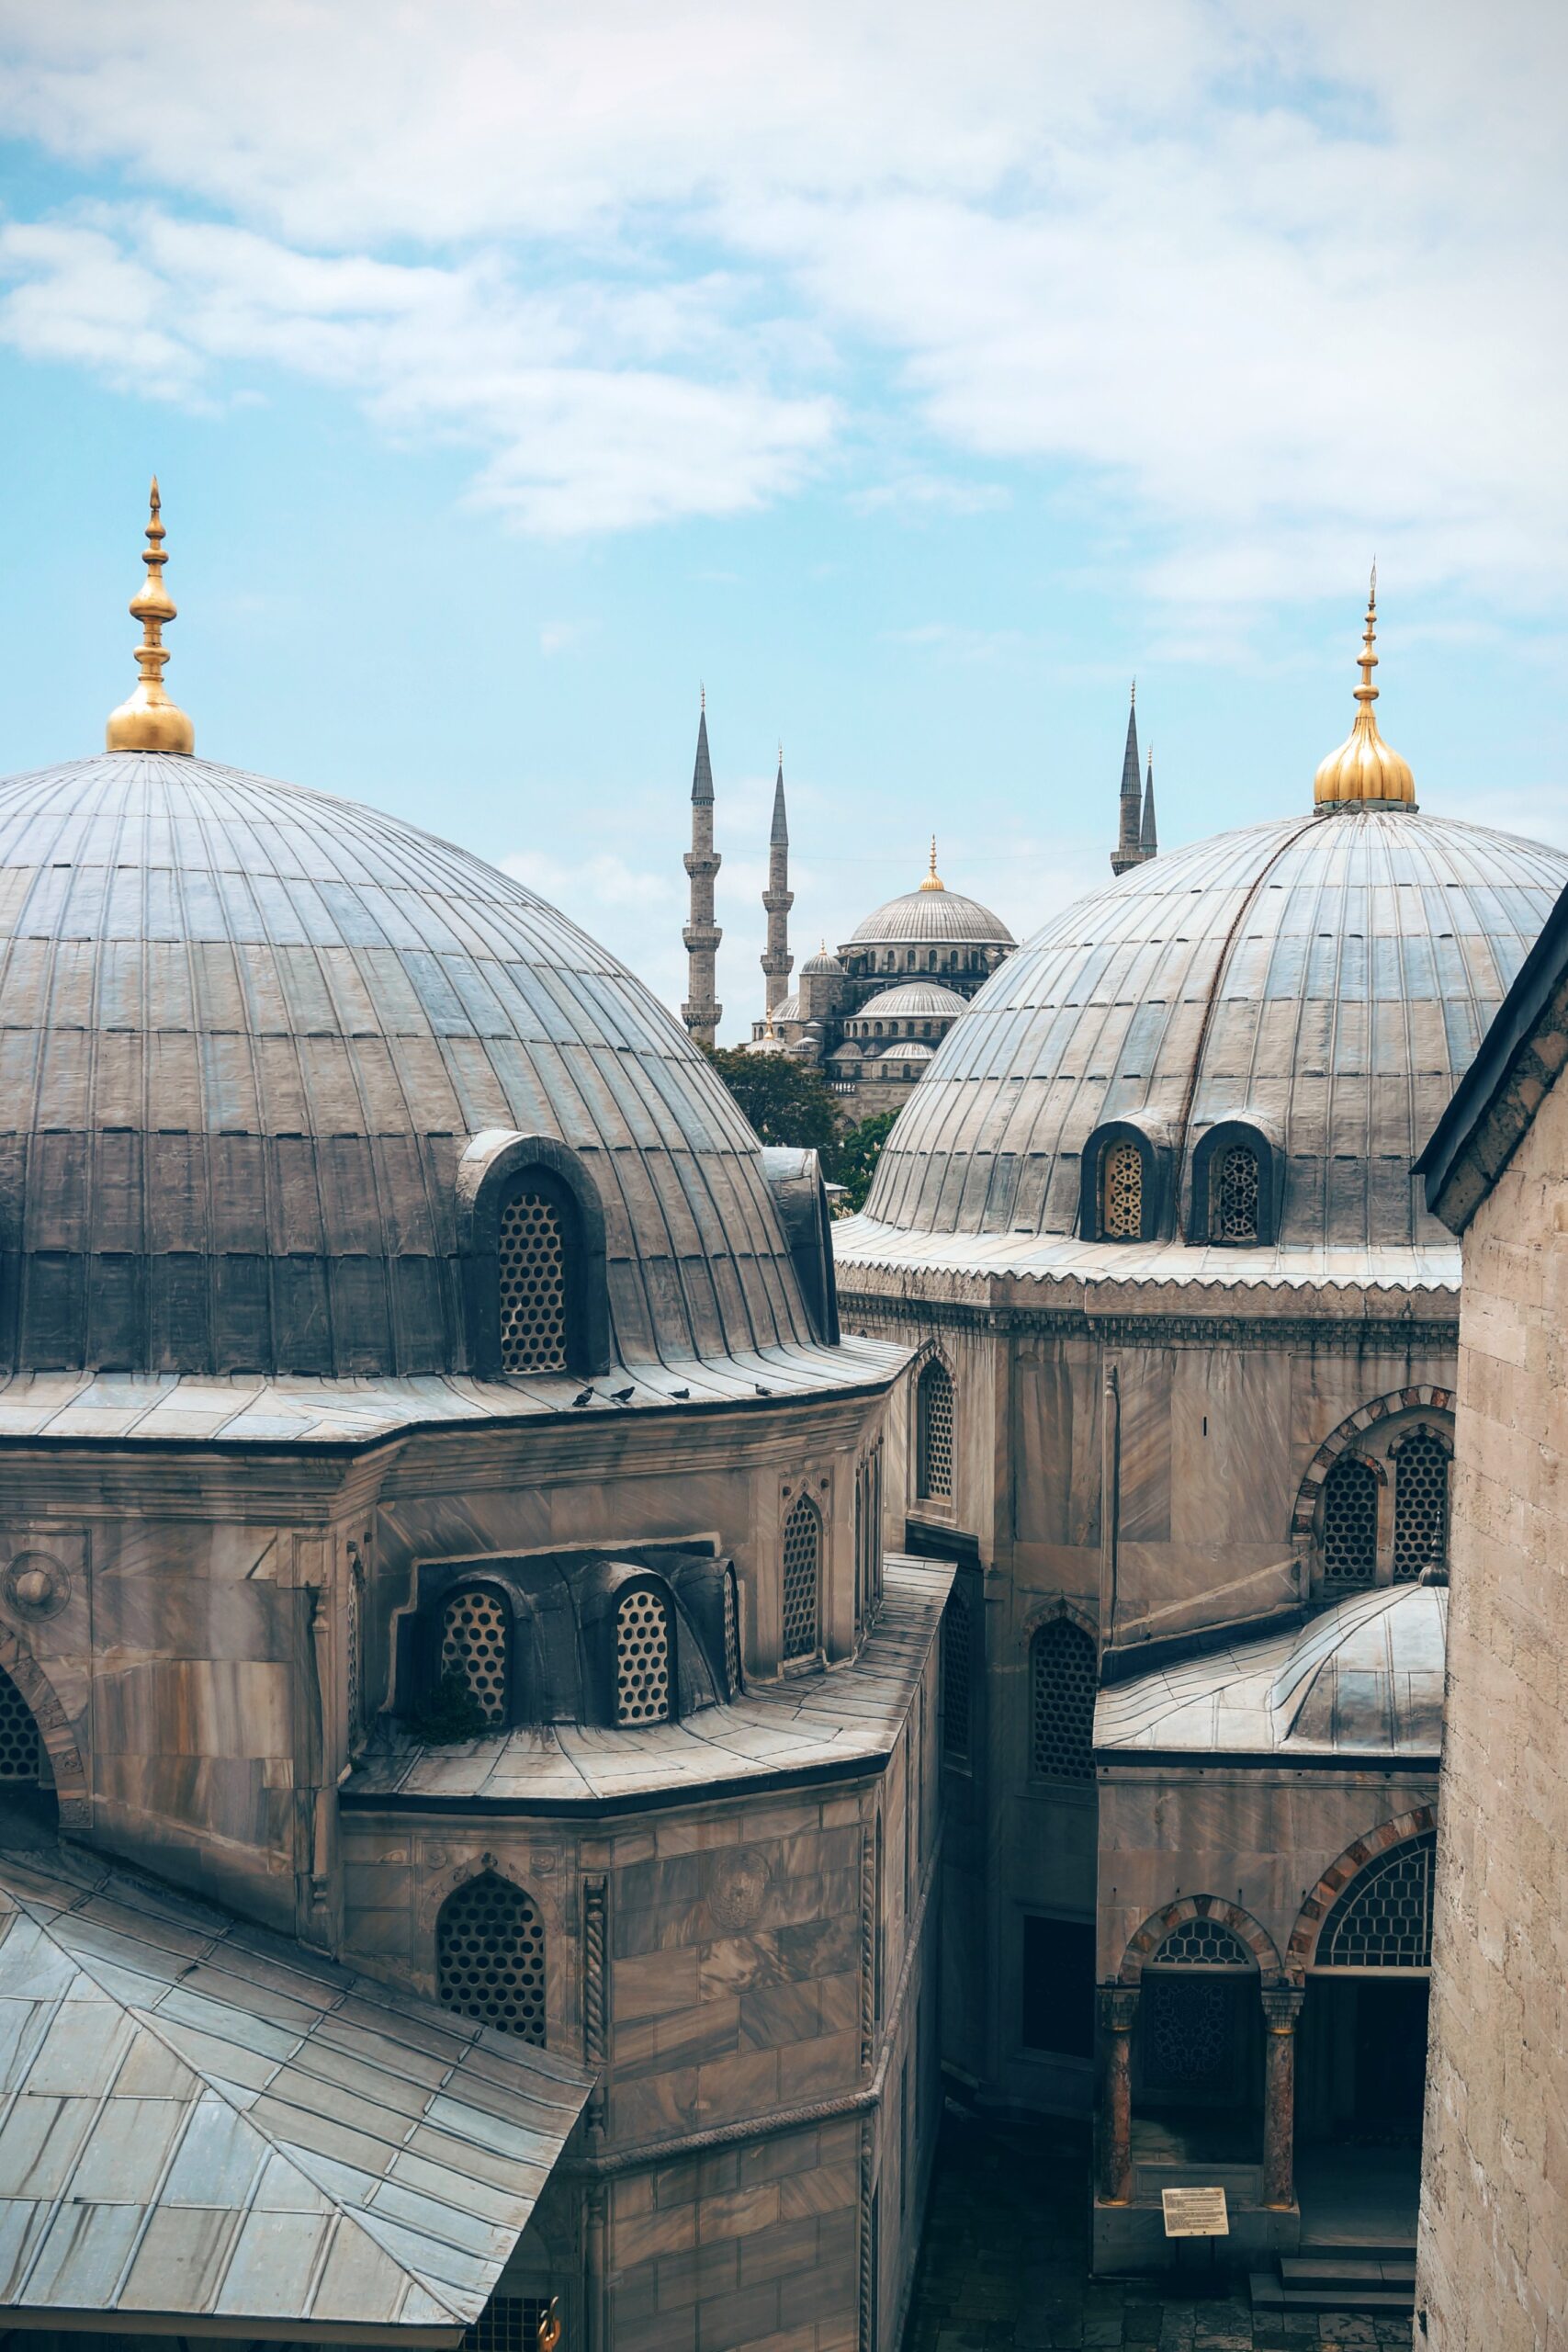 Die Dächer des türkischen Basars in Istanbul.